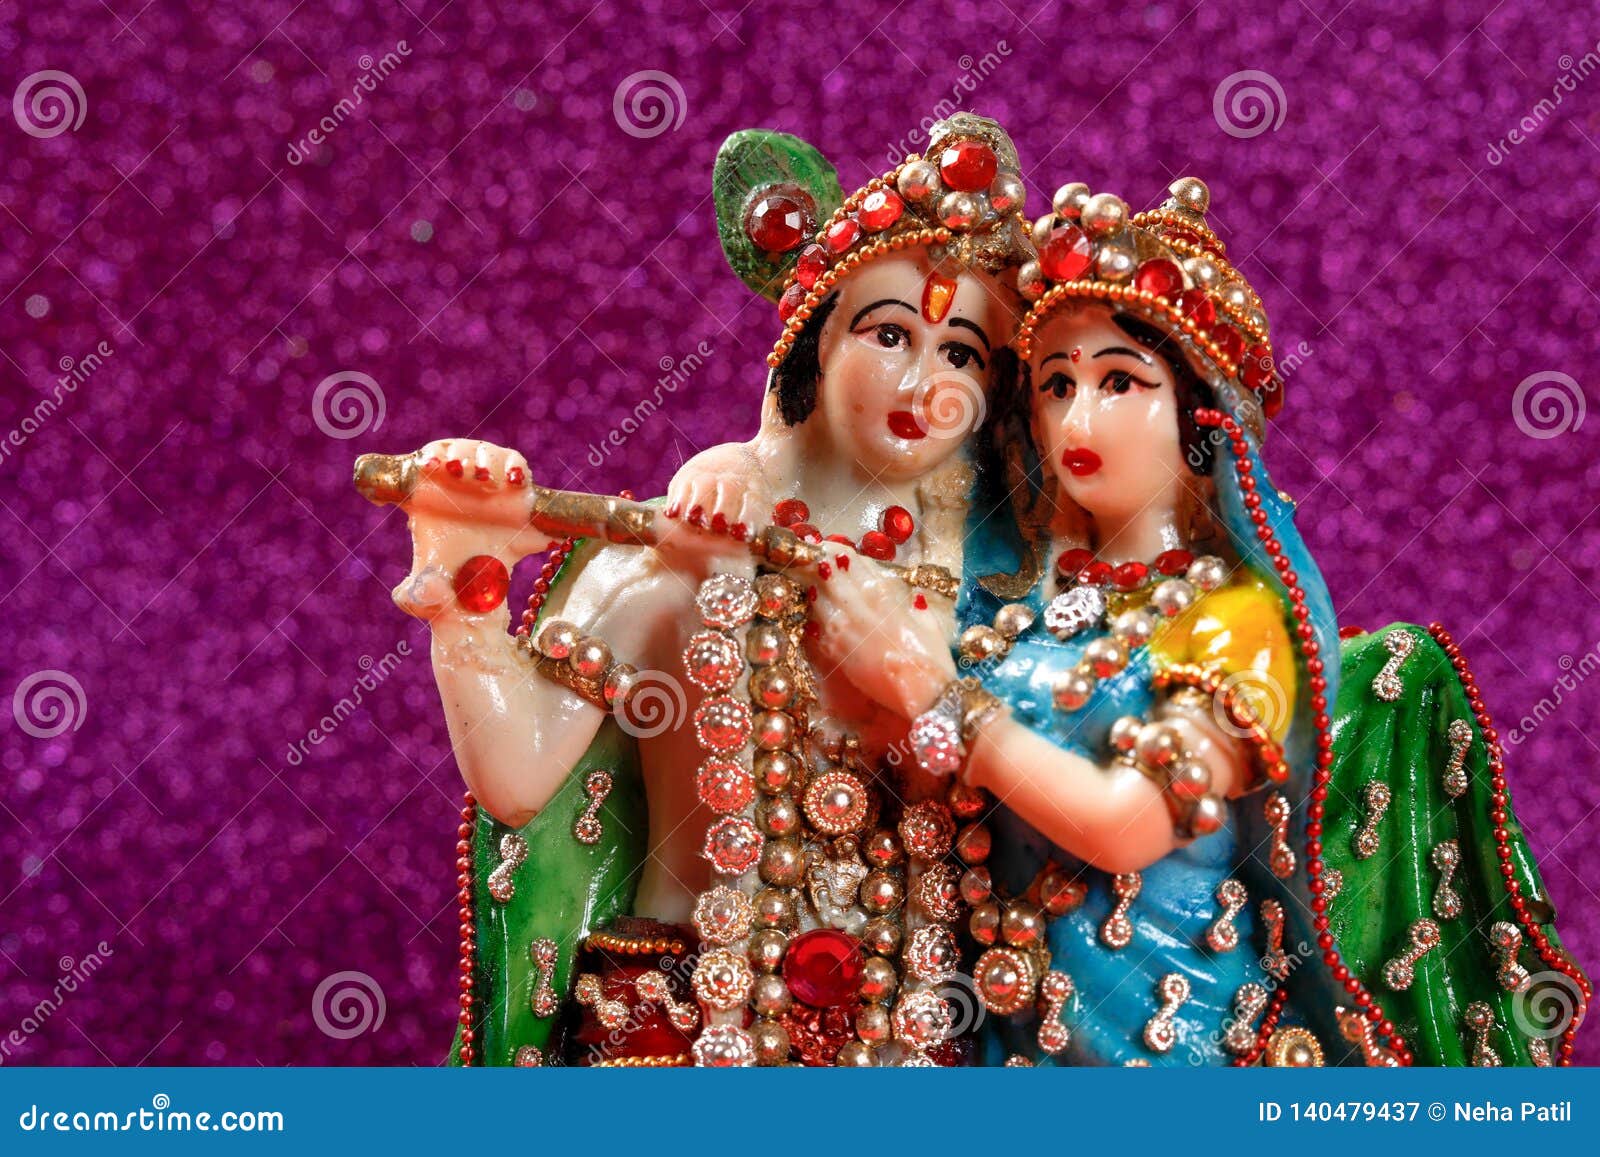 Lord Krishna Und Radha Indischer Gott Stockbild Bild Von Mythologie Lord 140479437 